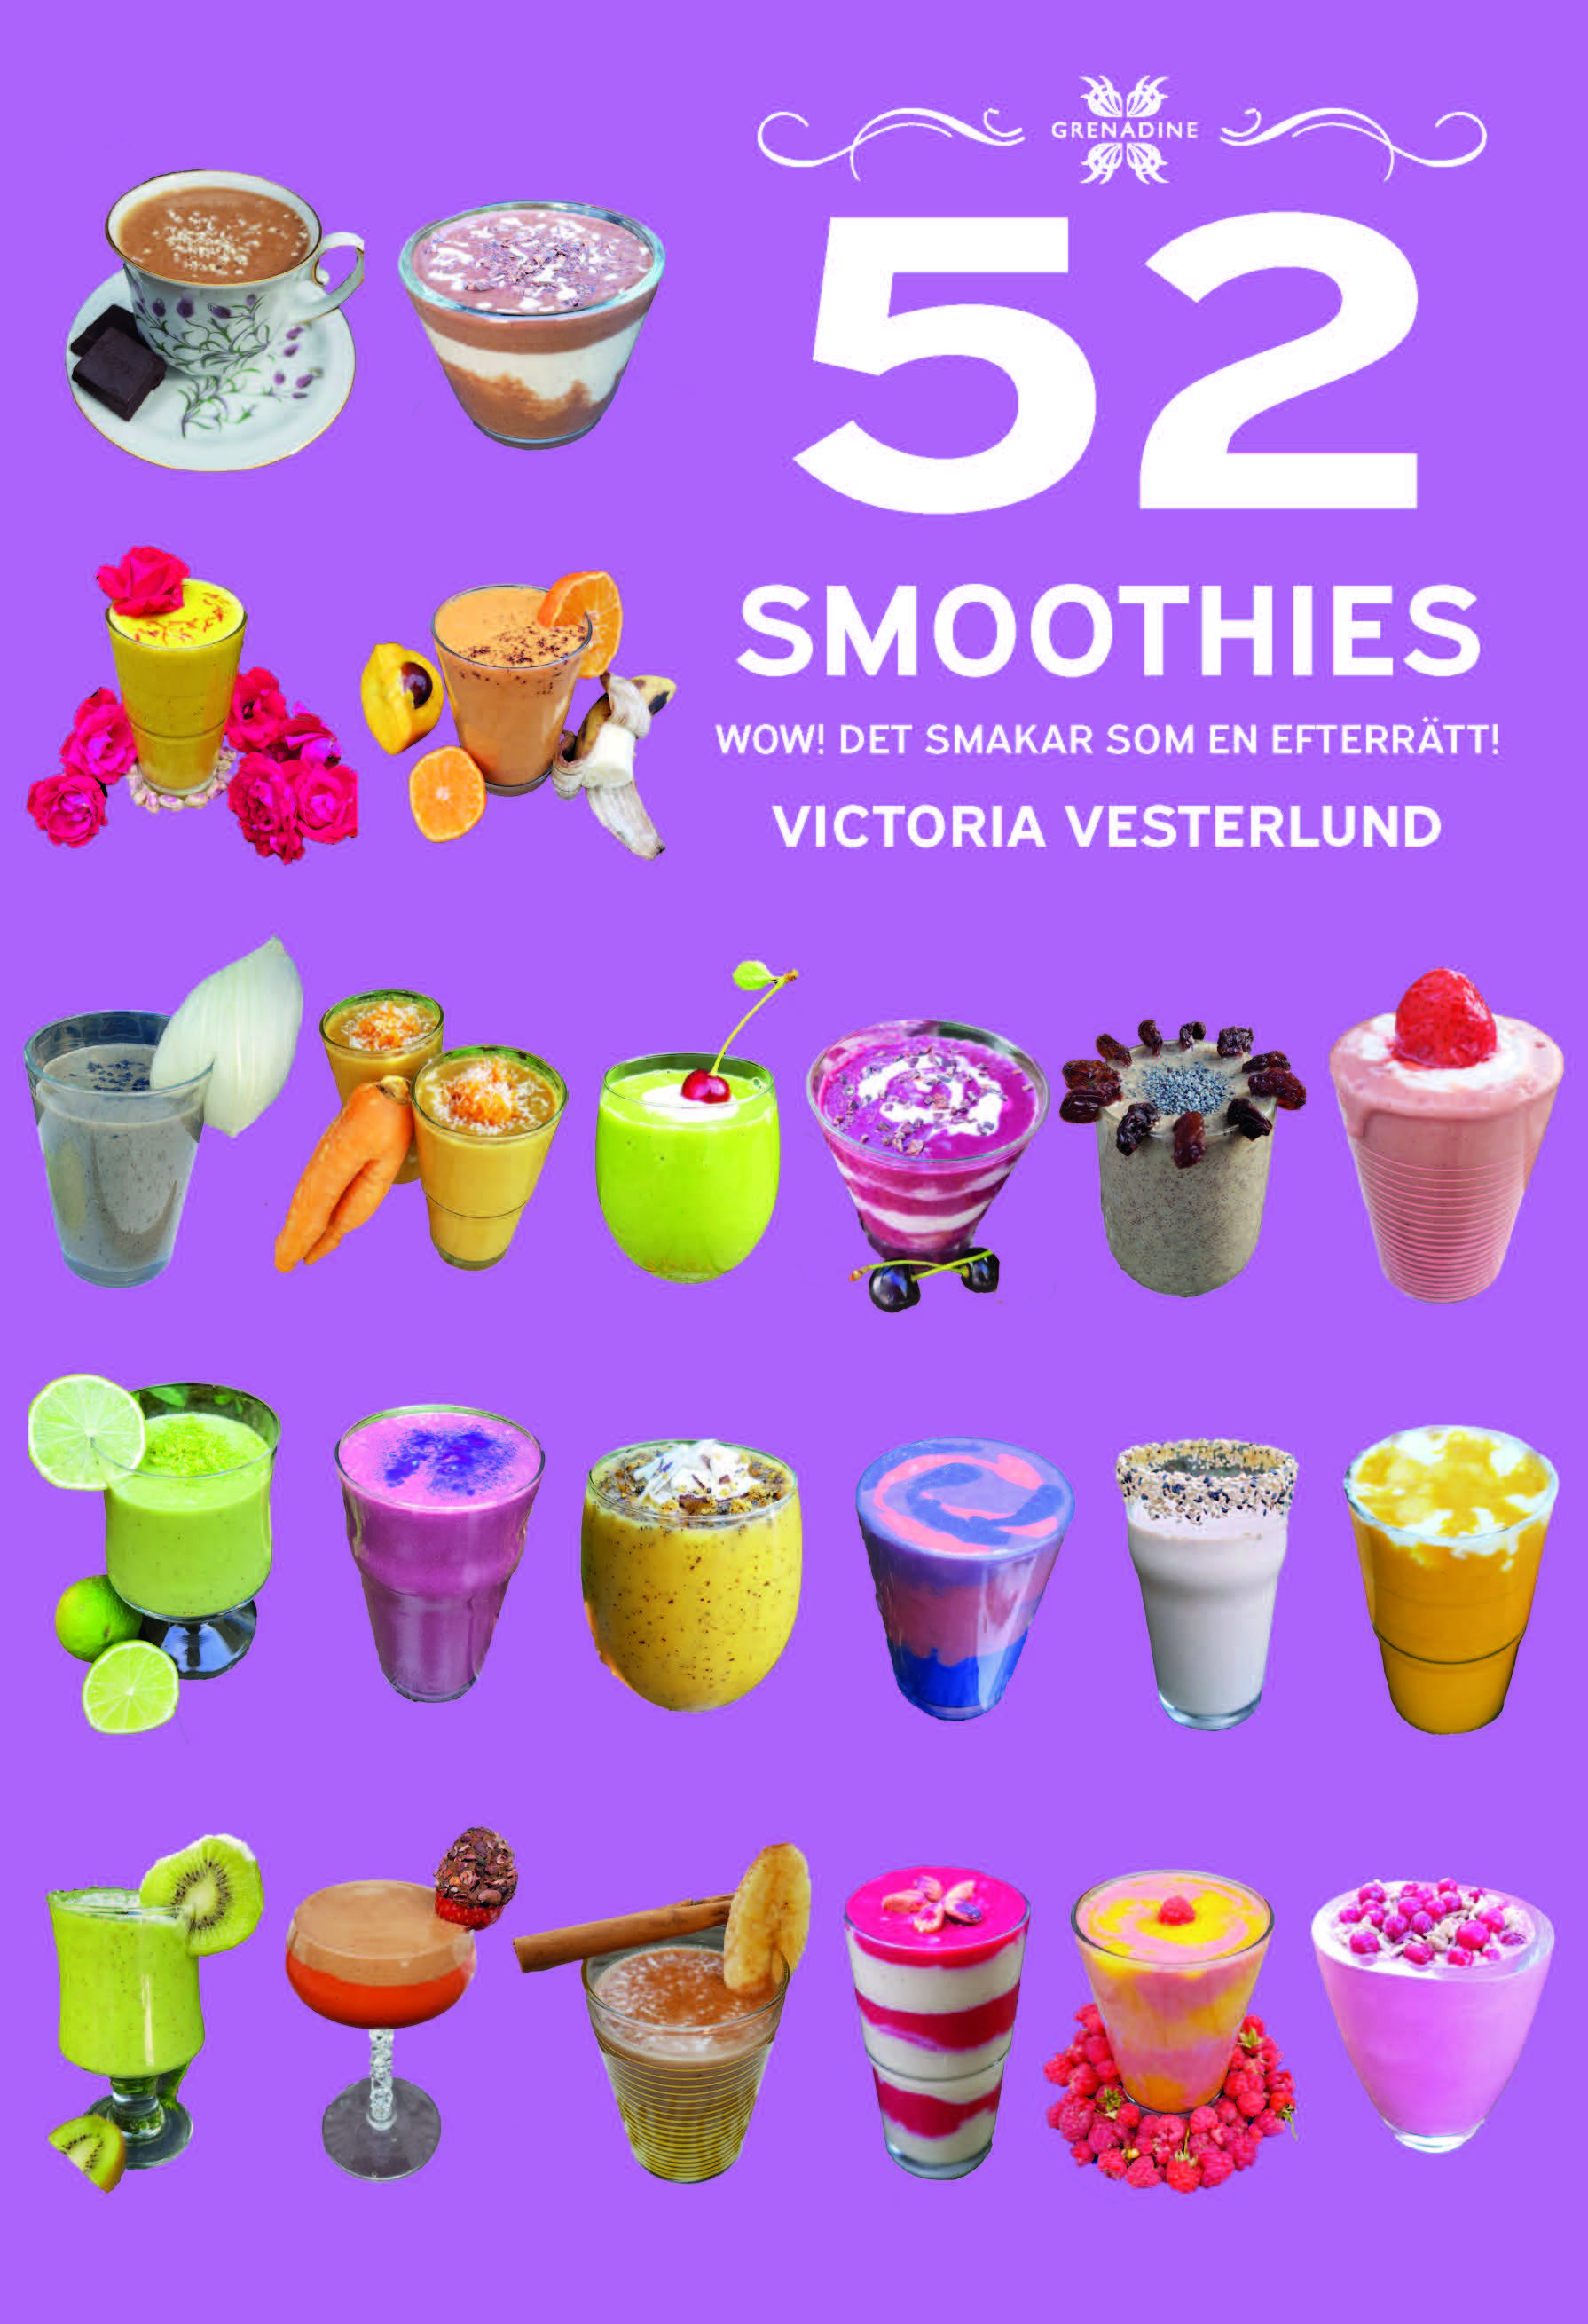 52 Smoothies: Wow! Det smakar som en efterrätt! är skriven av författaren Victoria Vesterlund, Grenadine Bokförlag.